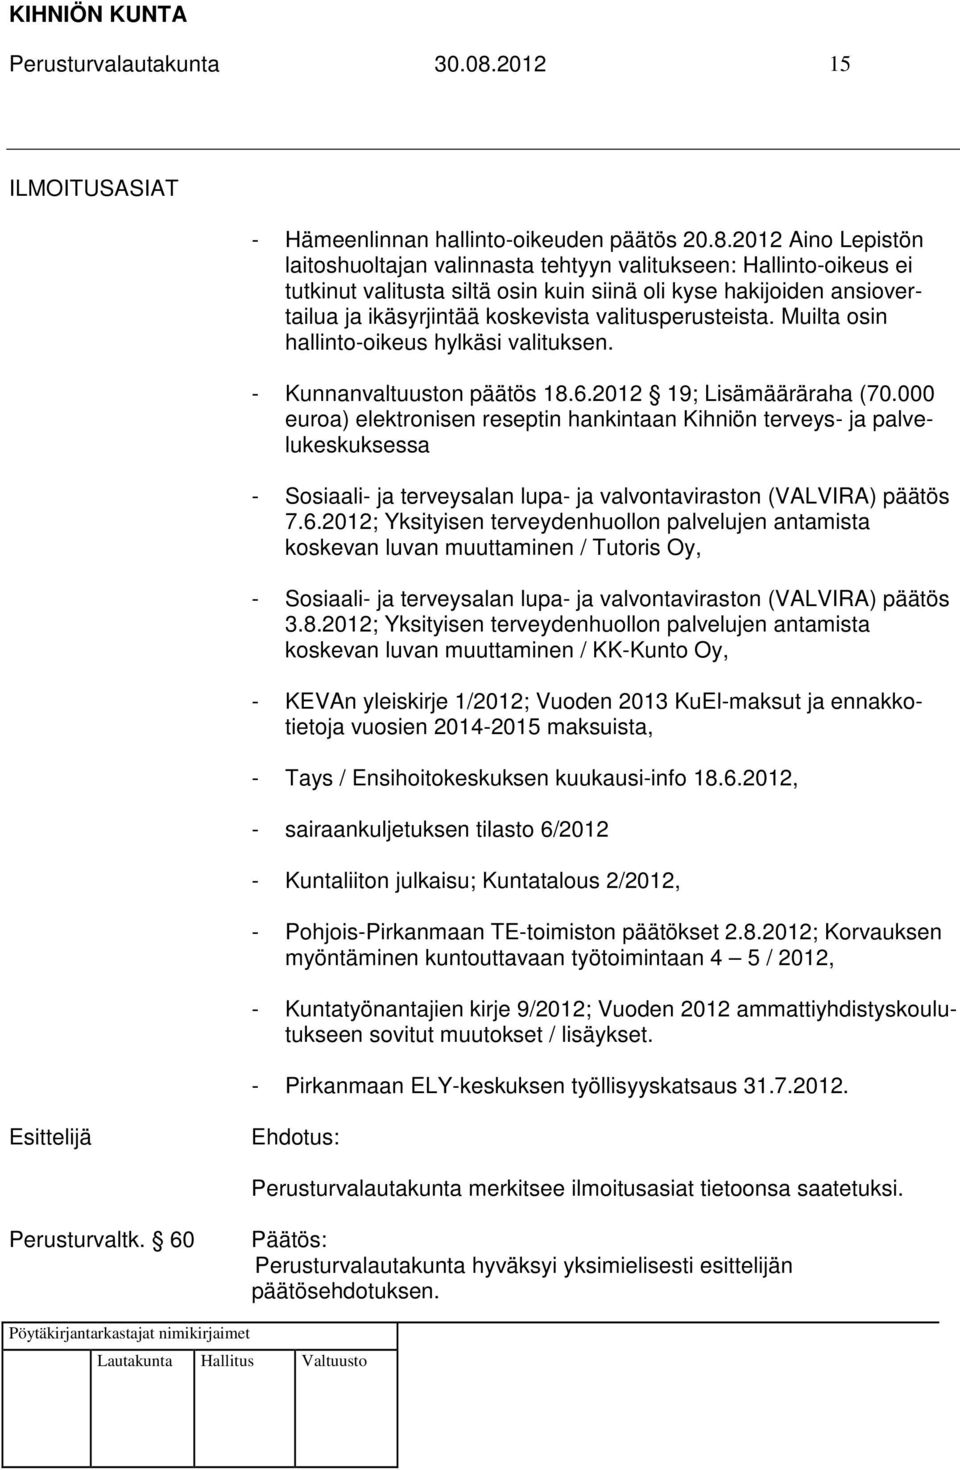 2012 Aino Lepistön laitoshuoltajan valinnasta tehtyyn valitukseen: Hallinto-oikeus ei tutkinut valitusta siltä osin kuin siinä oli kyse hakijoiden ansiovertailua ja ikäsyrjintää koskevista